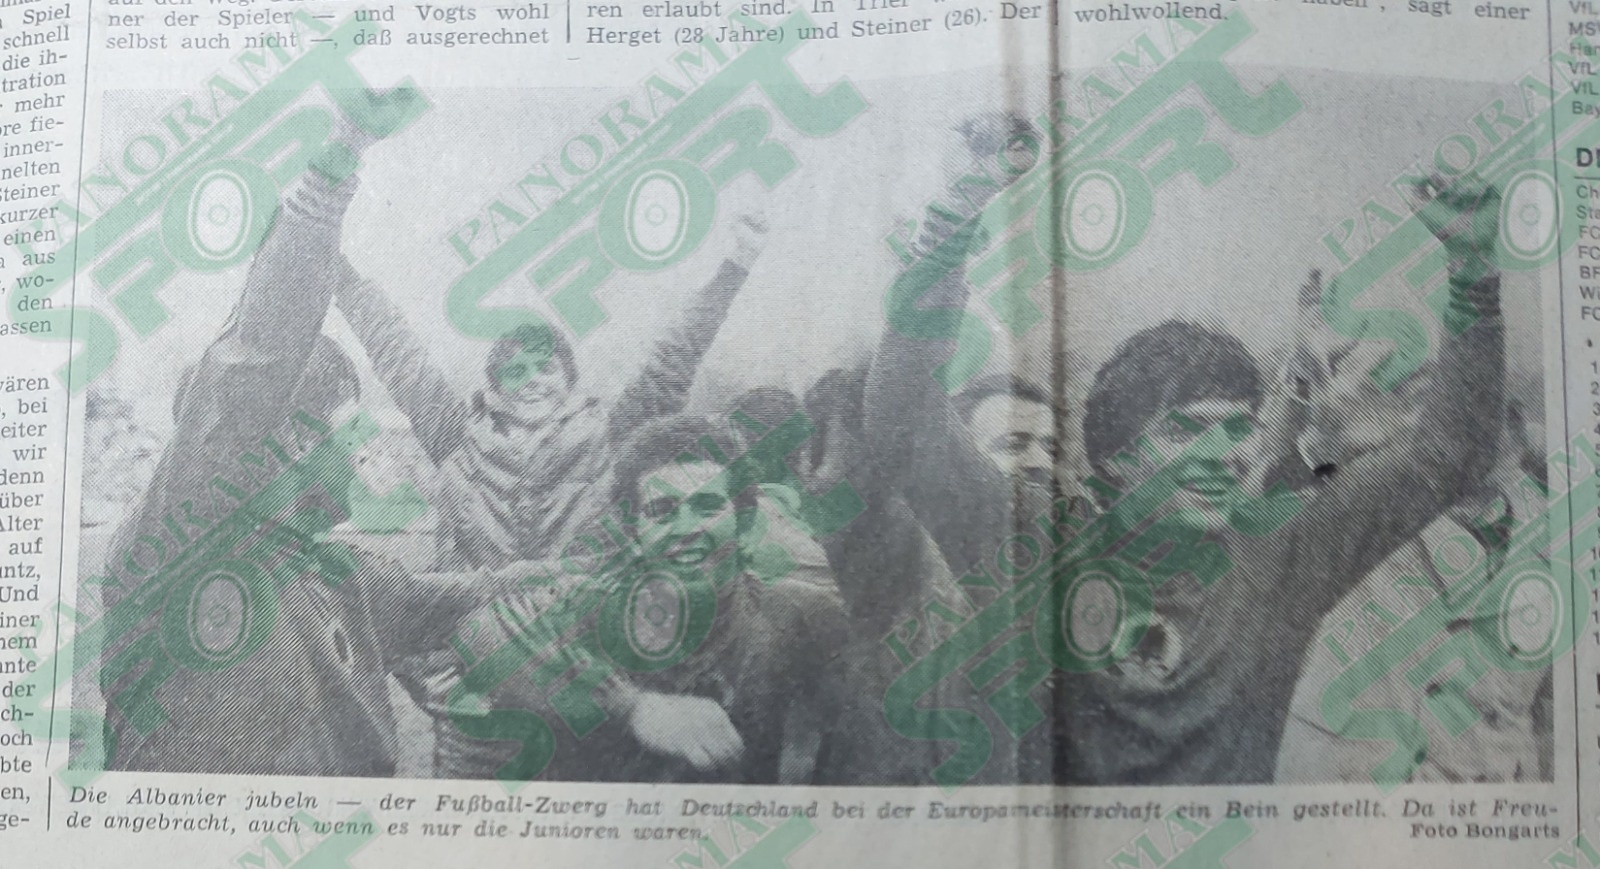 Gëzim i futbollistëve shqiptarë pas ndeshjes në foton e gazetës “Frankfur Allgemeine Zeitung”. Nga e djathta në plan të parë: Jera, Liti, Zmijani